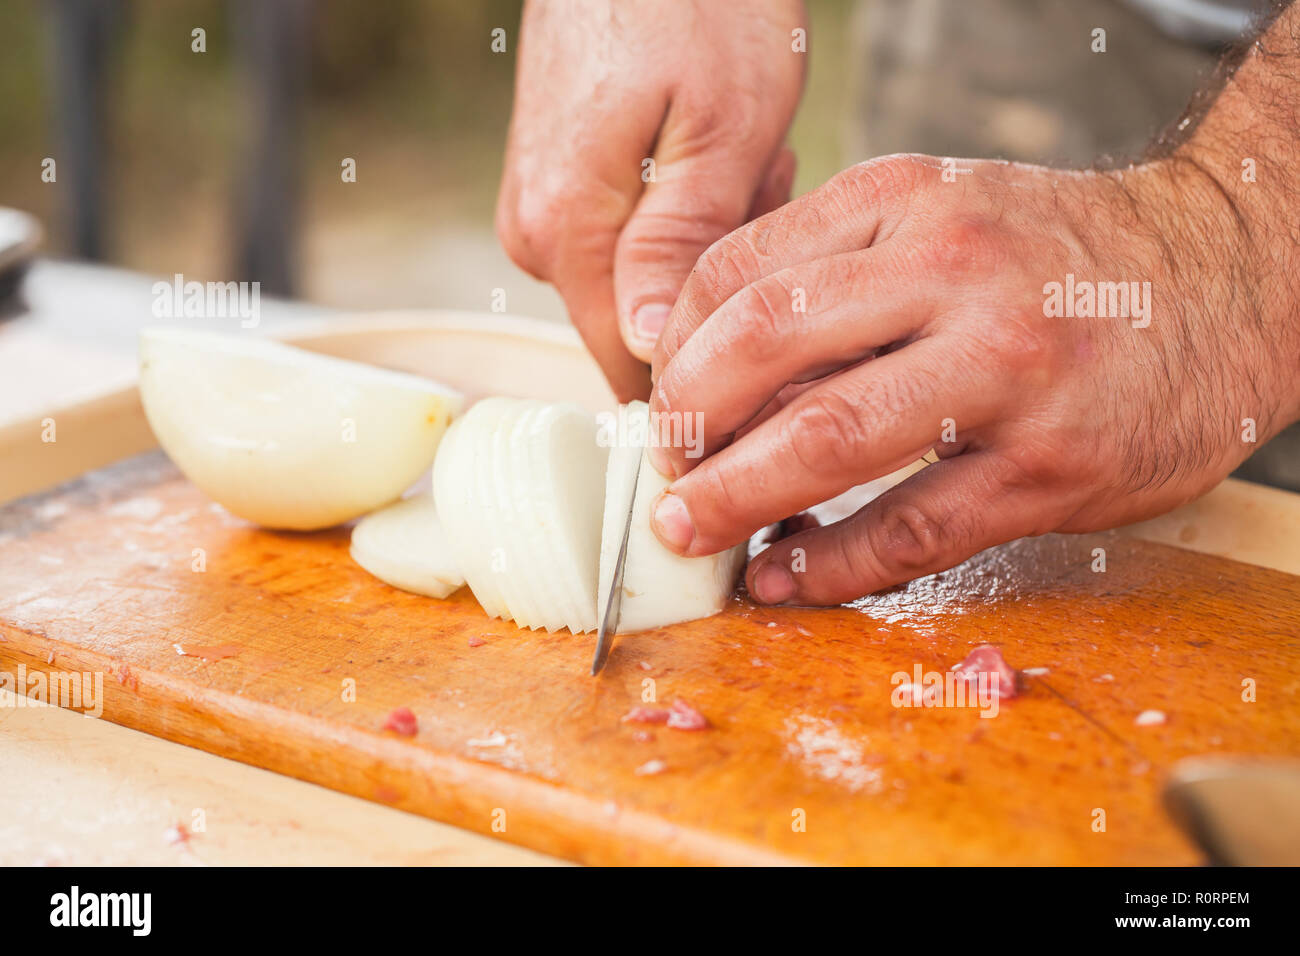 Weiße Zwiebel schneiden. Kochen Hände mit Messer, Nahaufnahme, selektiver Fokus Stockfoto